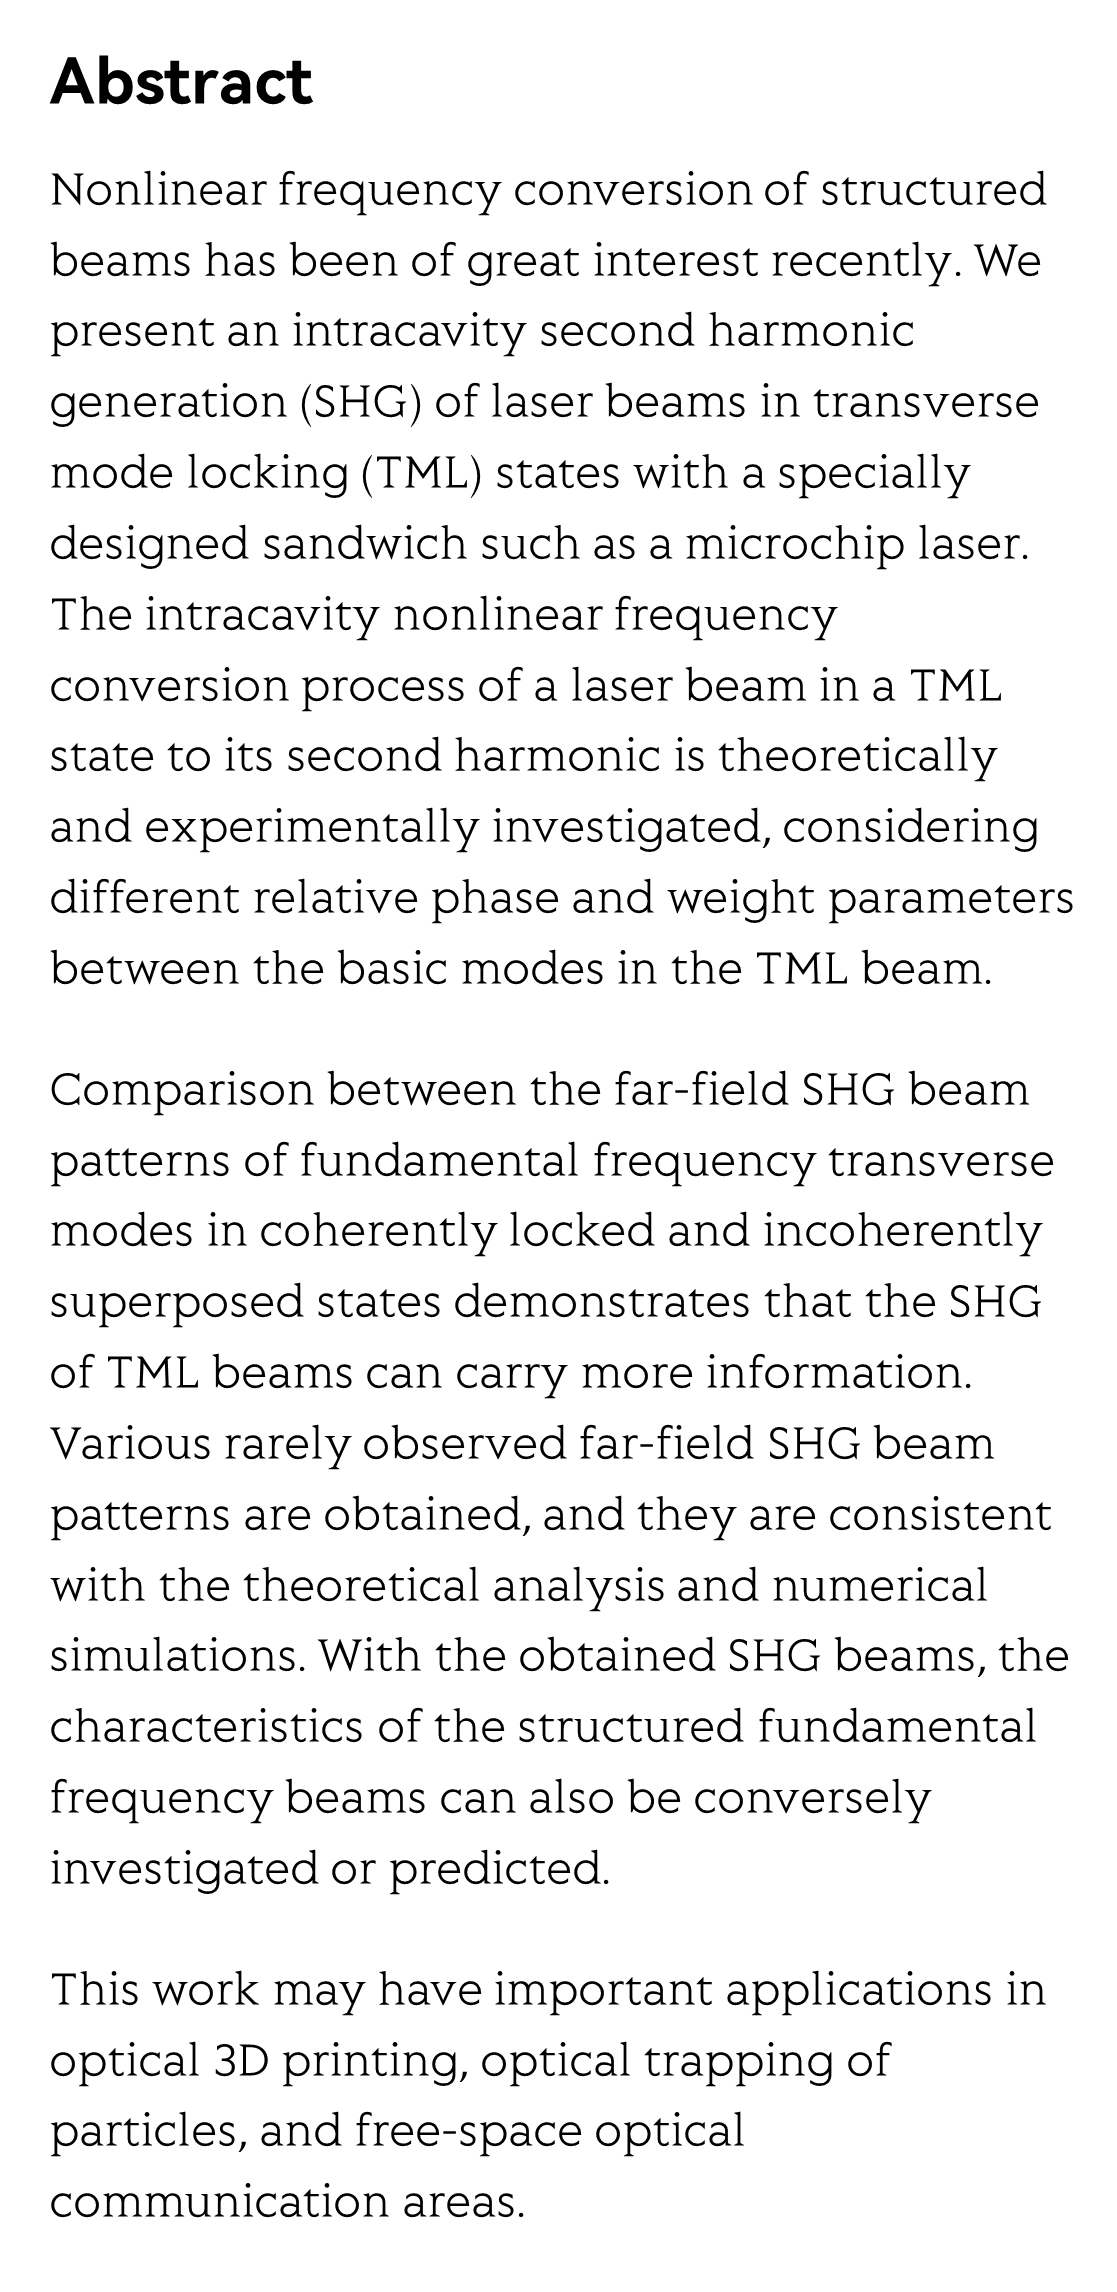 Second harmonic generation of laser beams in transverse mode locking states_2